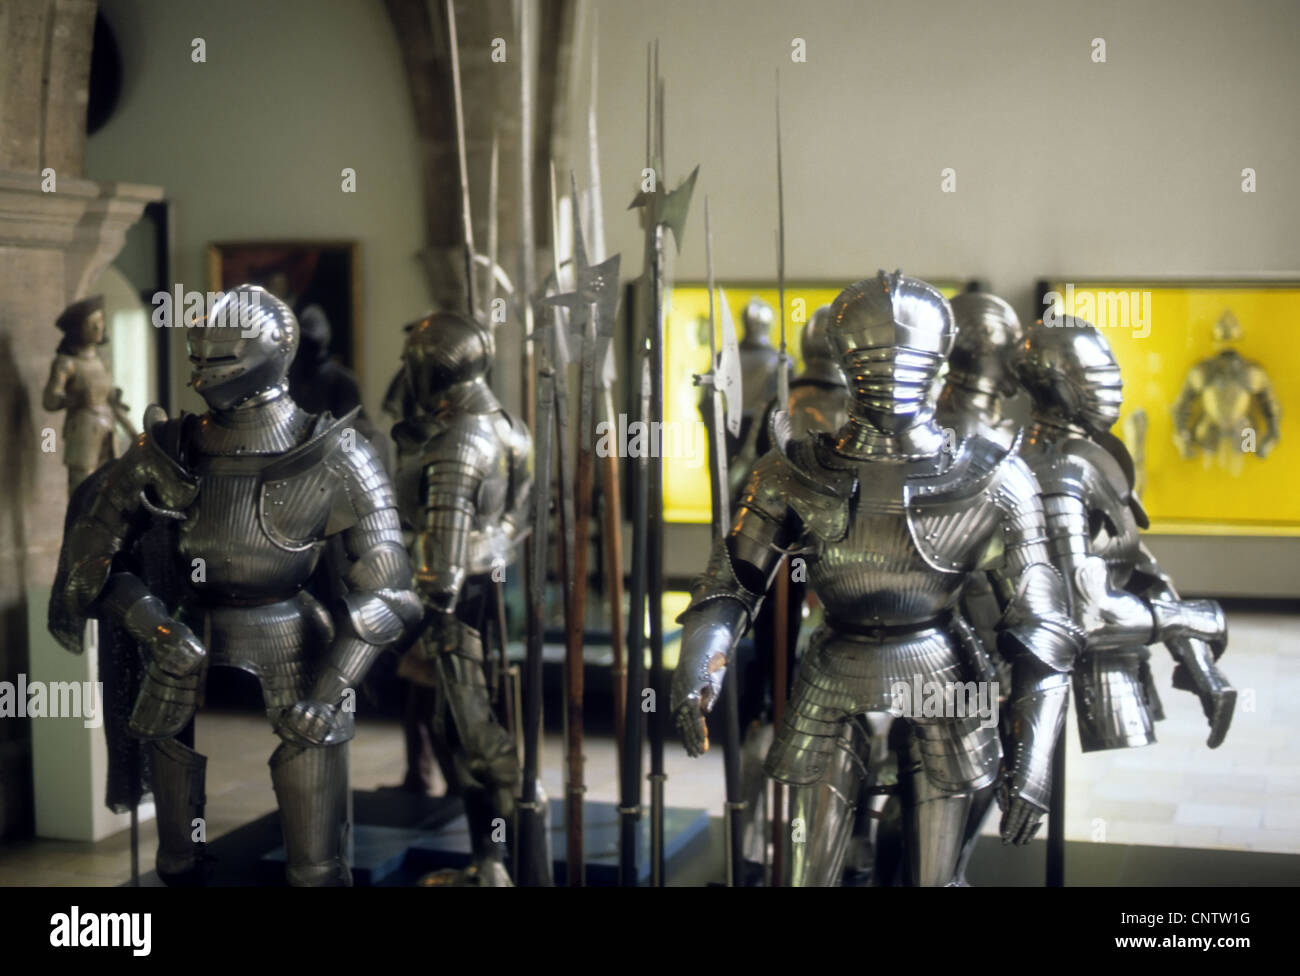 Armor di cavalieri medievali in mostra nel museo, Monaco di Baviera Germania, Europa Foto Stock